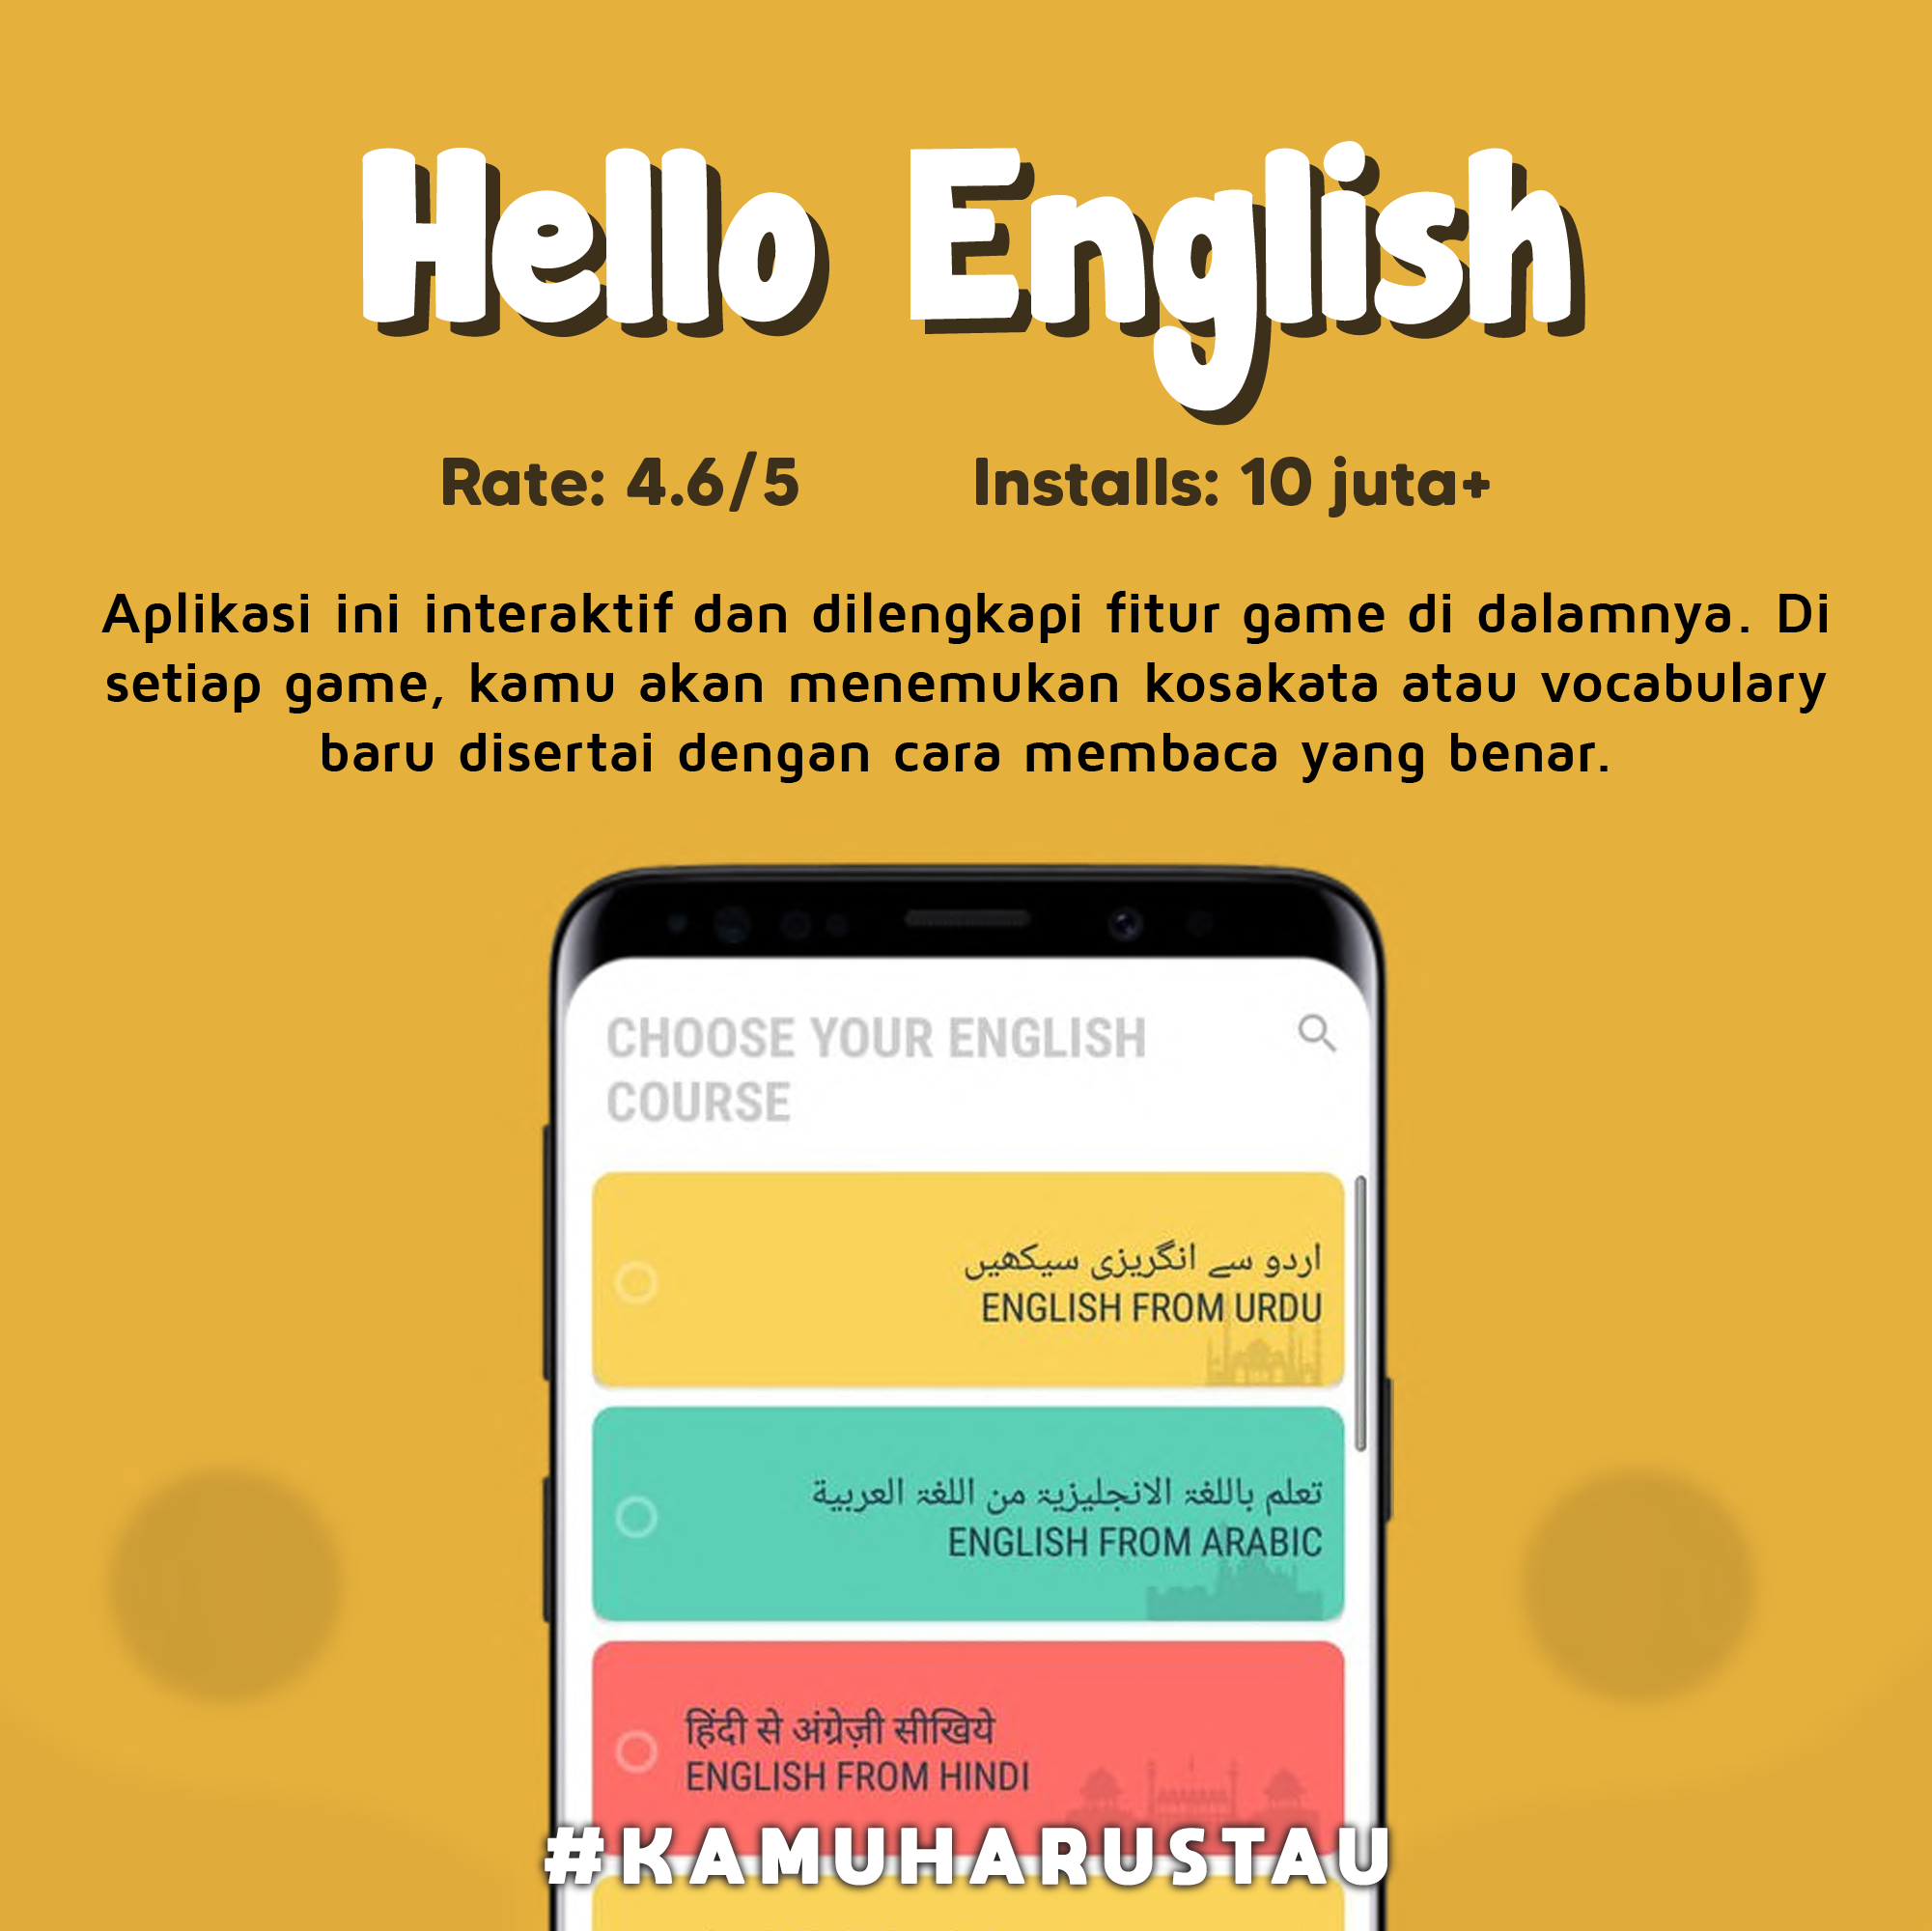 Aplikasi-Aplikasi Belajar Bahasa Inggris Dengan Mudah | Indozone.id